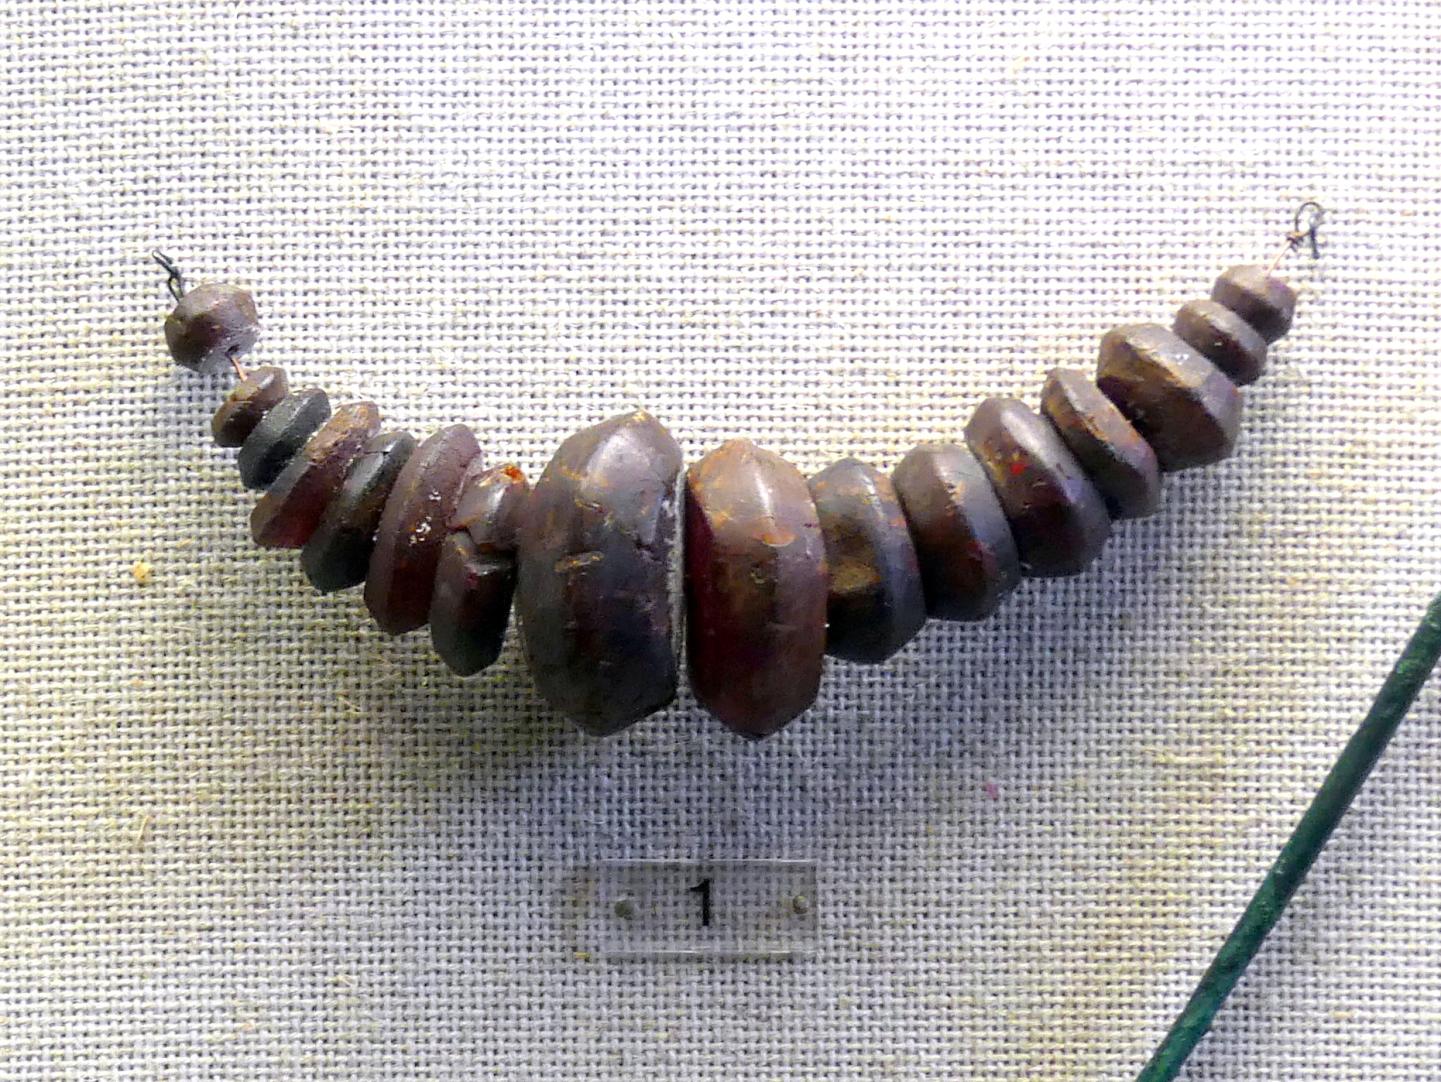 Bernsteinkette, Späte (Jüngere) Bronzezeit, 1500 - 700 v. Chr., Bild 1/2